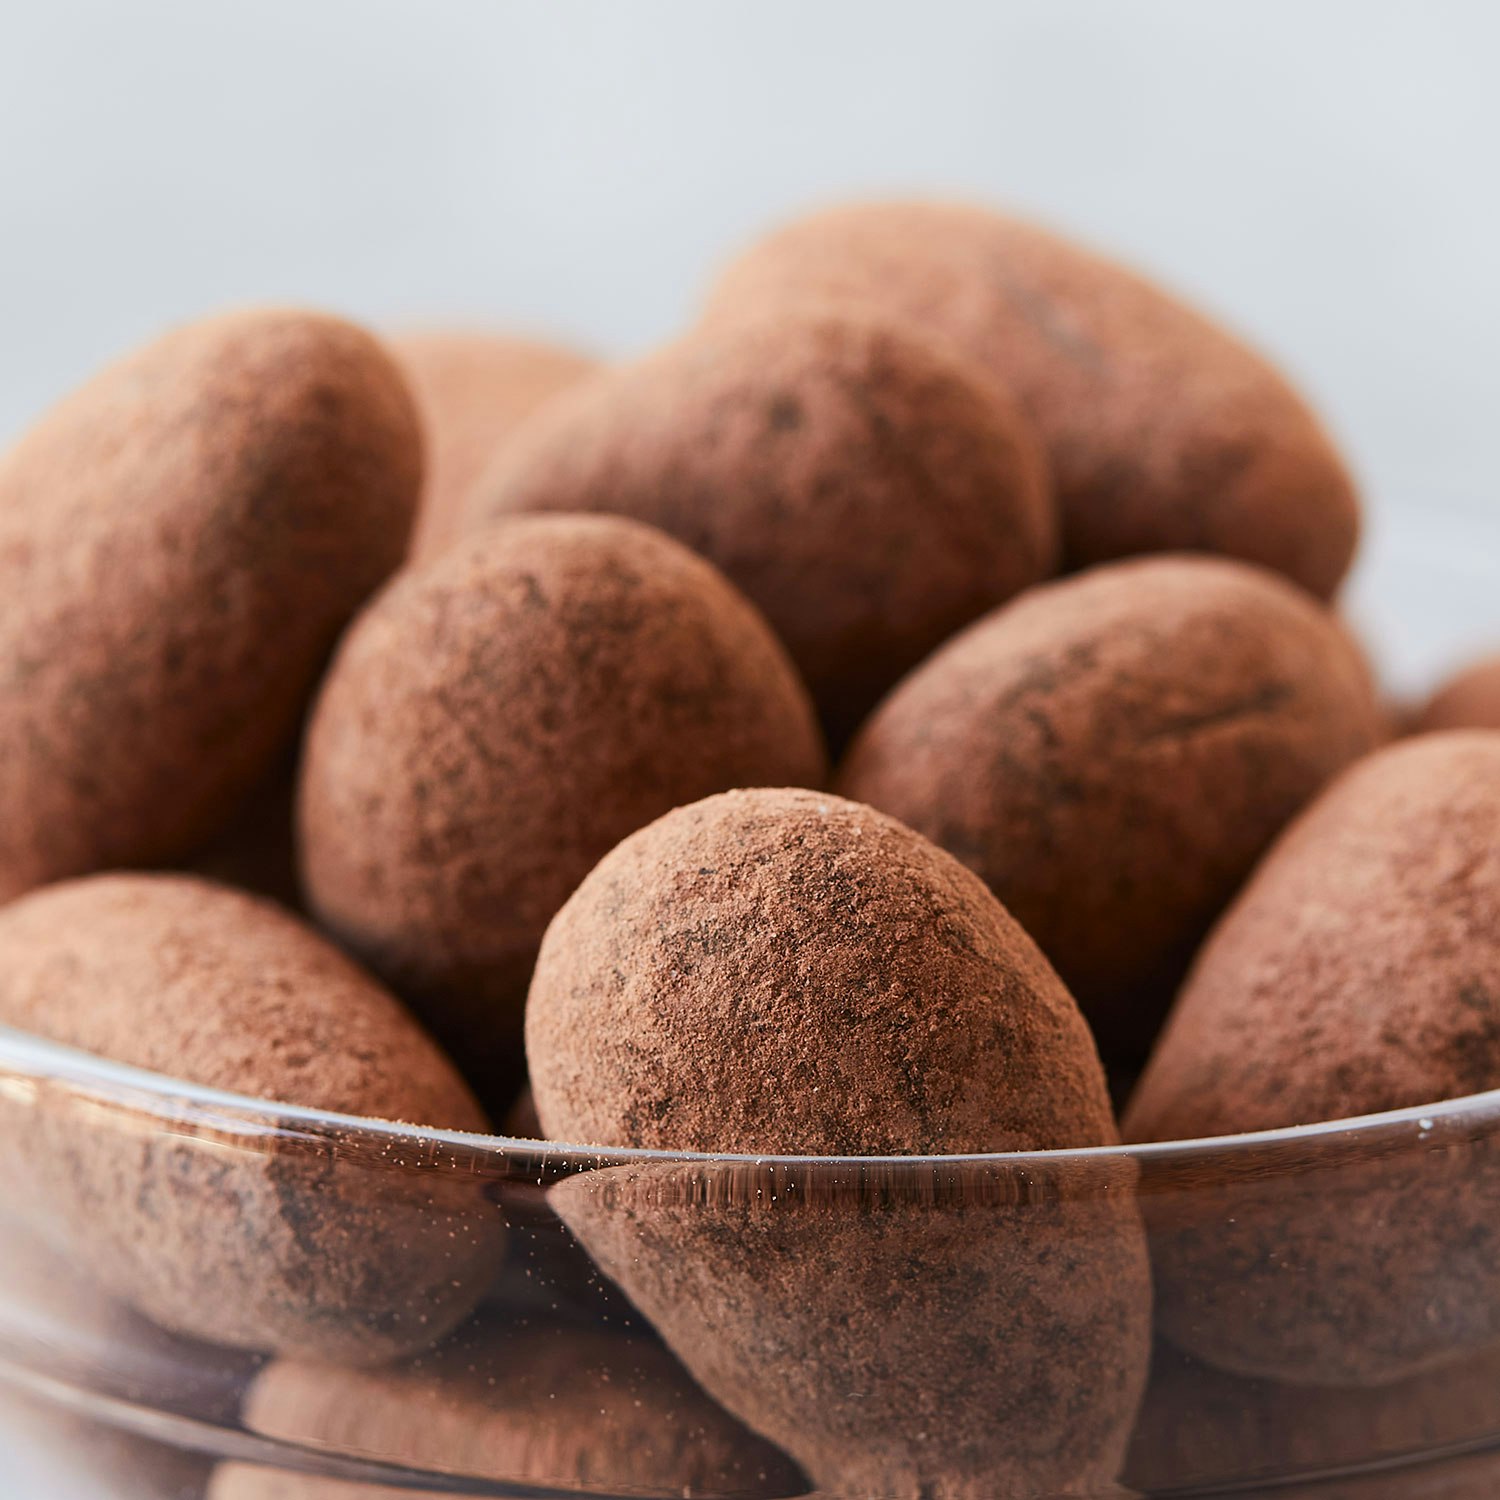 mitica piedras de chocolate minitub specialty foods